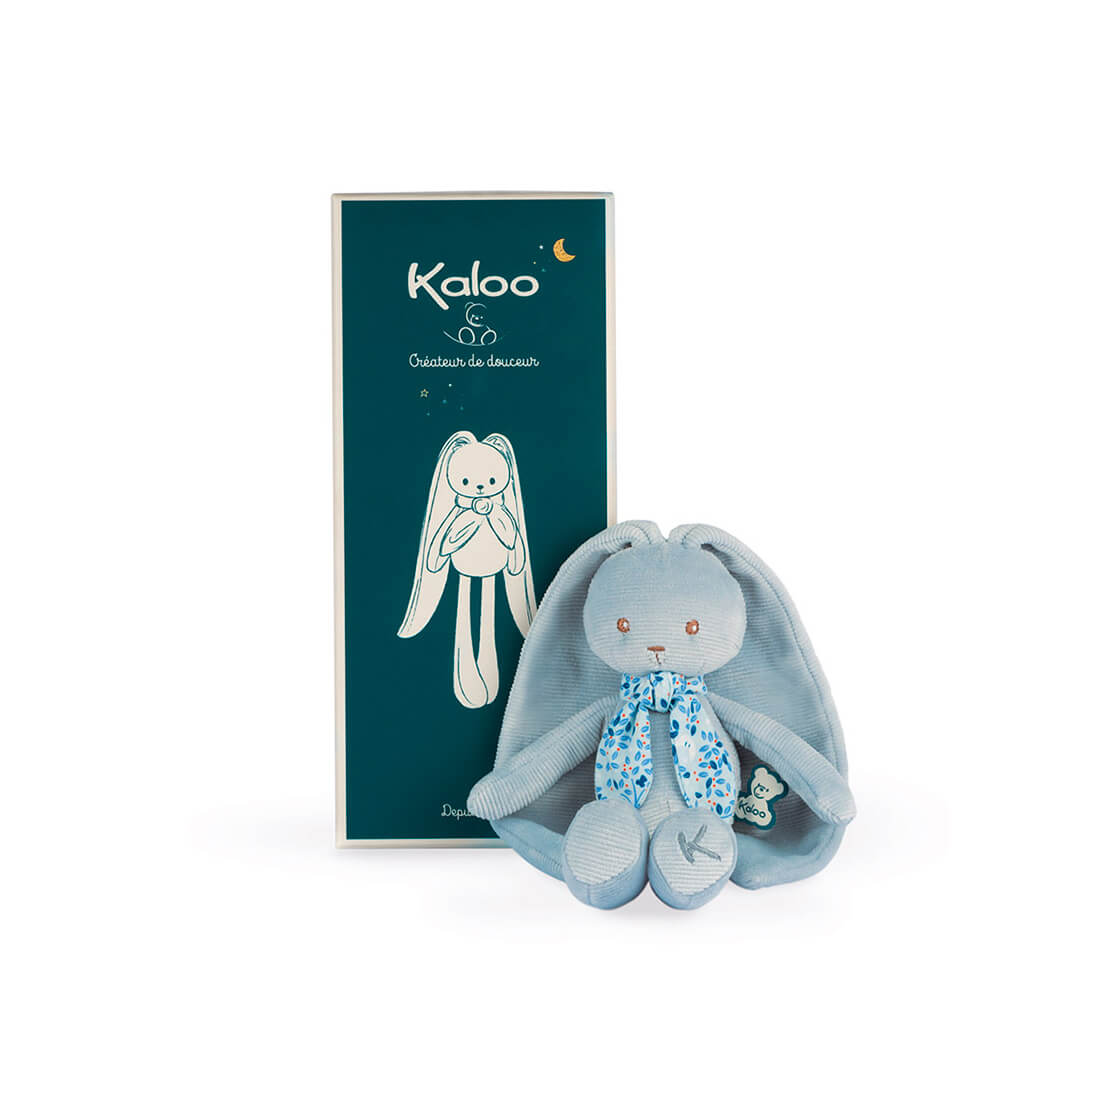 Мягкая игрушка Kaloo "Кролик", серия "Lapinoo" голубой, маленький, 25 см - фото №1